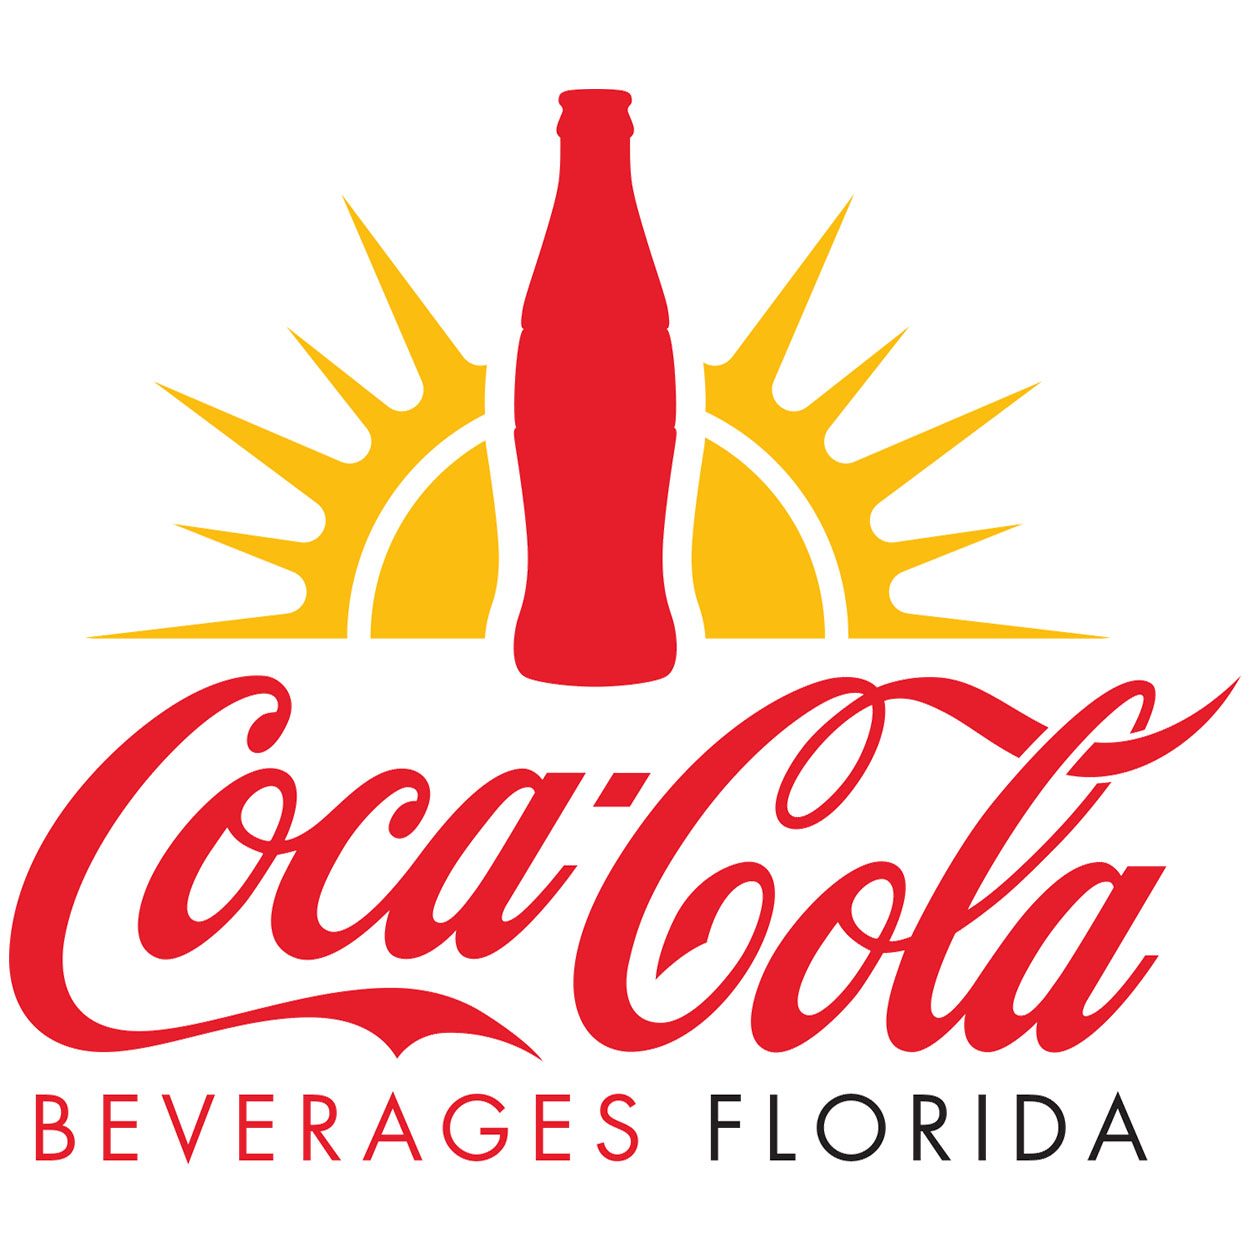 Coke Florida Logo